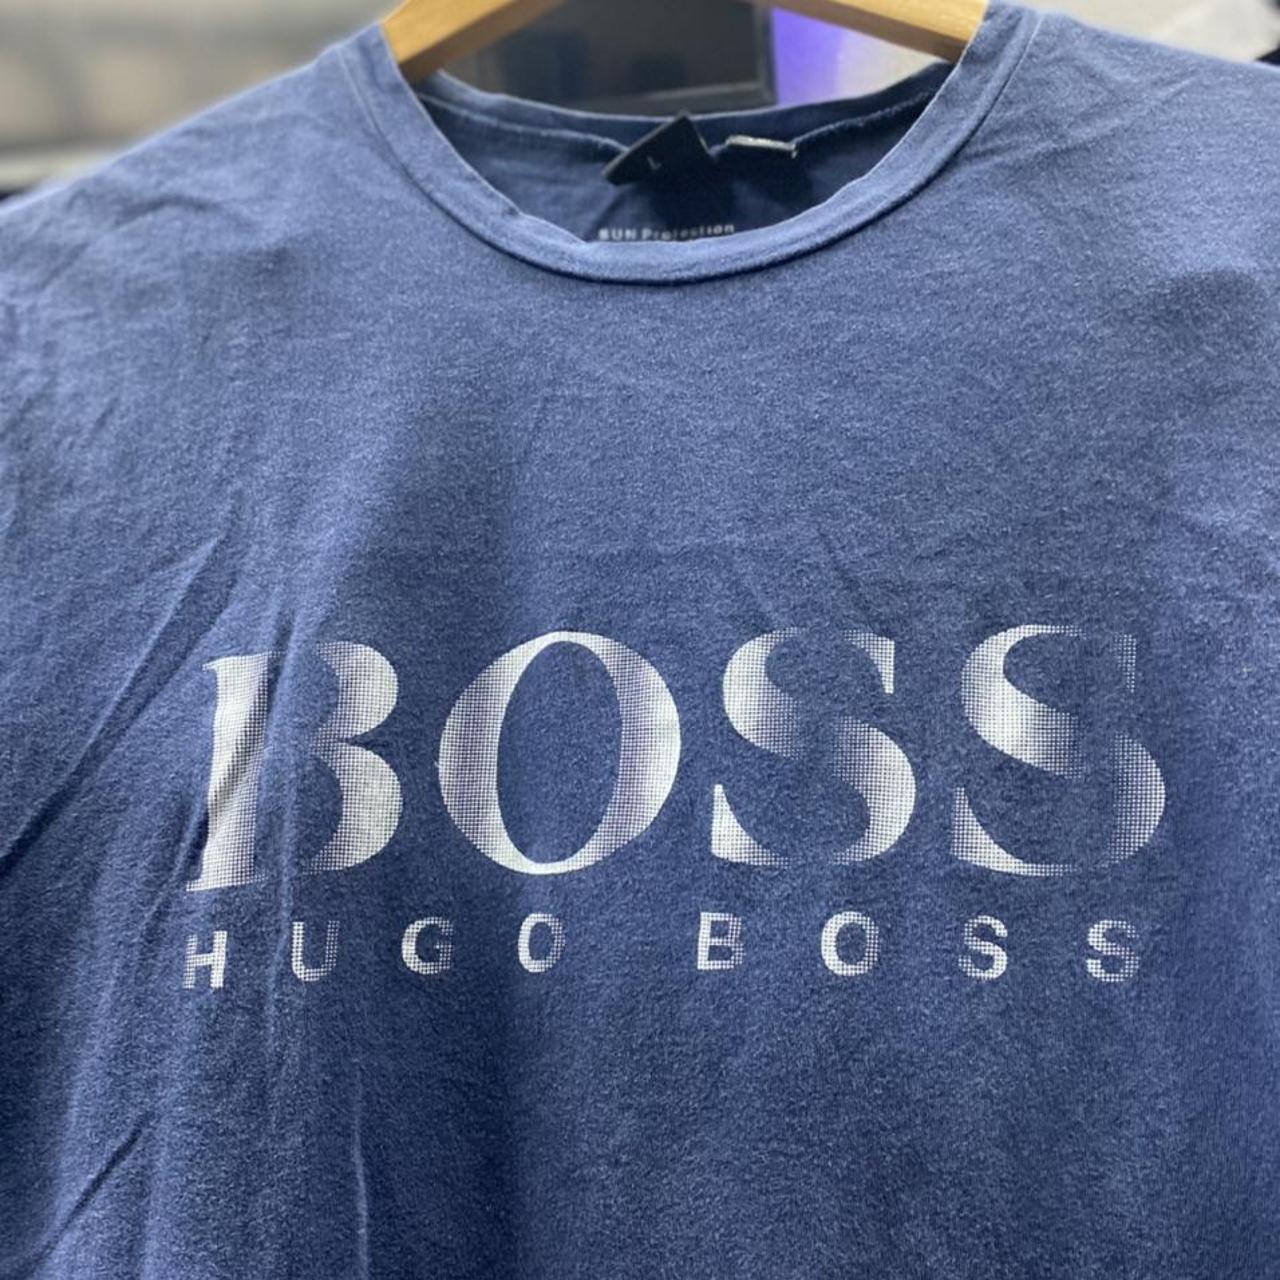 Vintage Hugo Boss Men’s Blue T-Shirt Size... - Depop